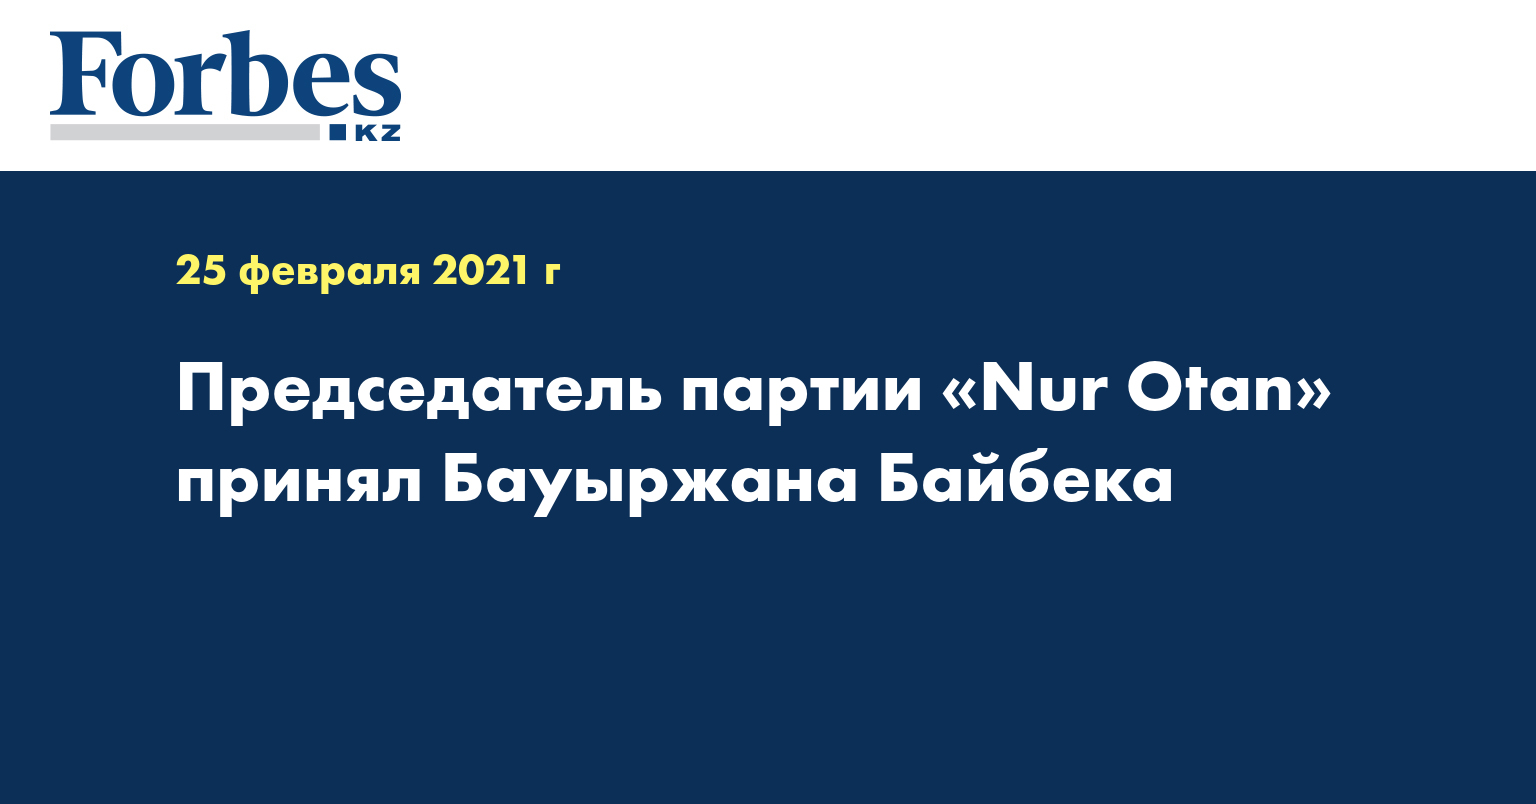 Председатель партии Nur Otan принял Бауыржана Байбека